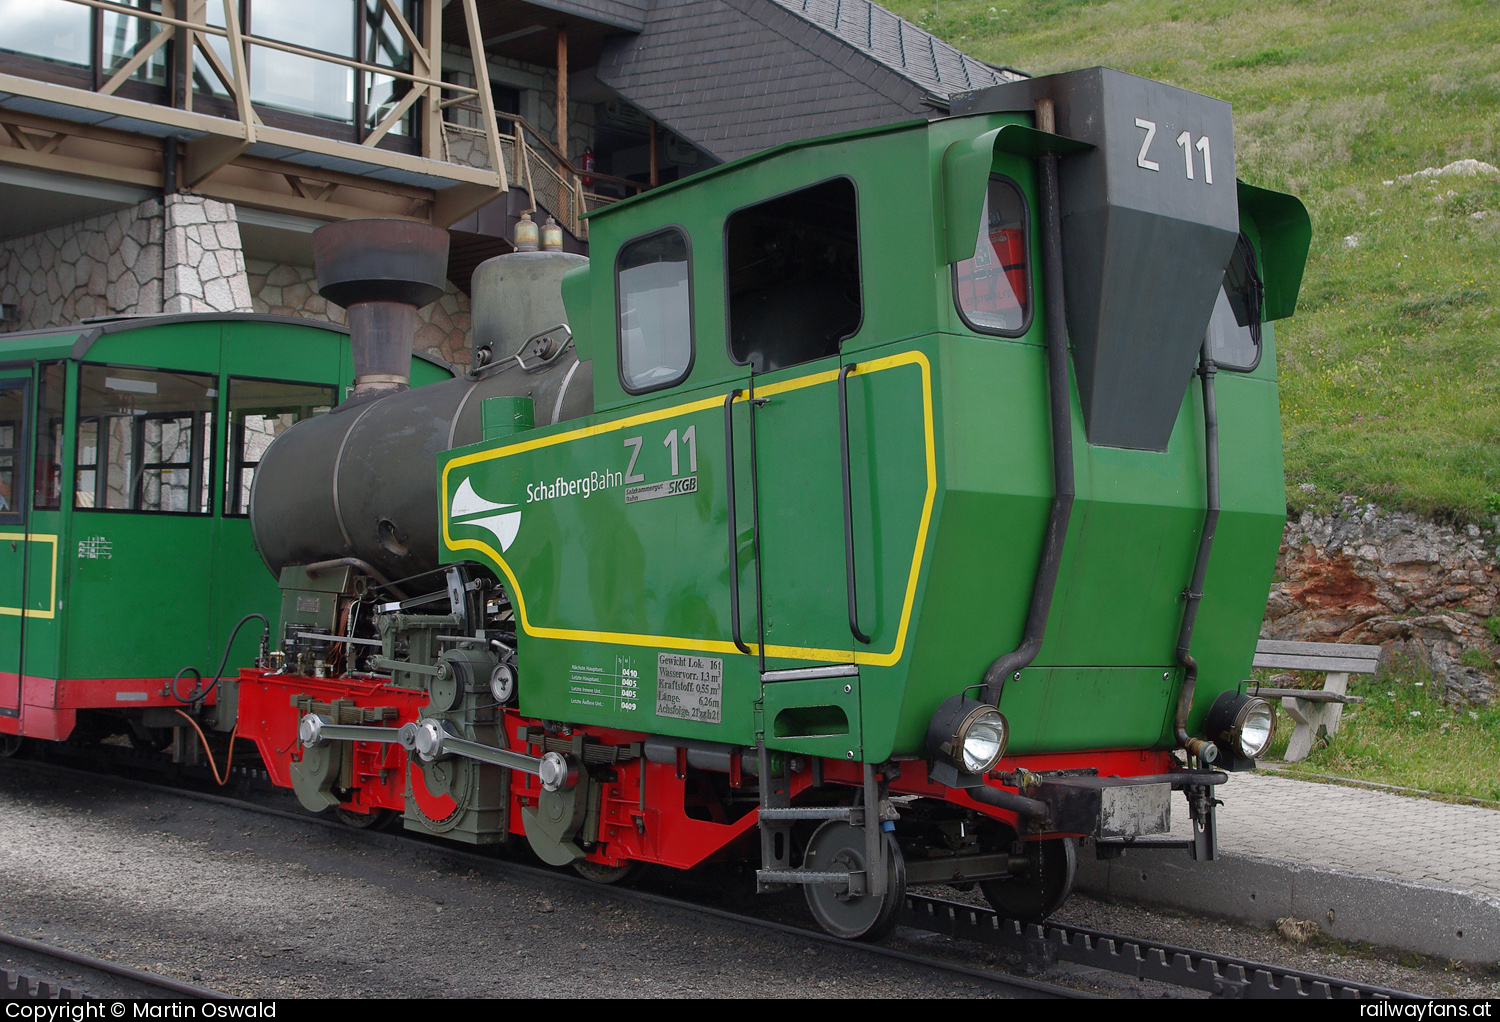 SKGB Z11 in Schafbergspitze Schafbergbahn Railwayfans